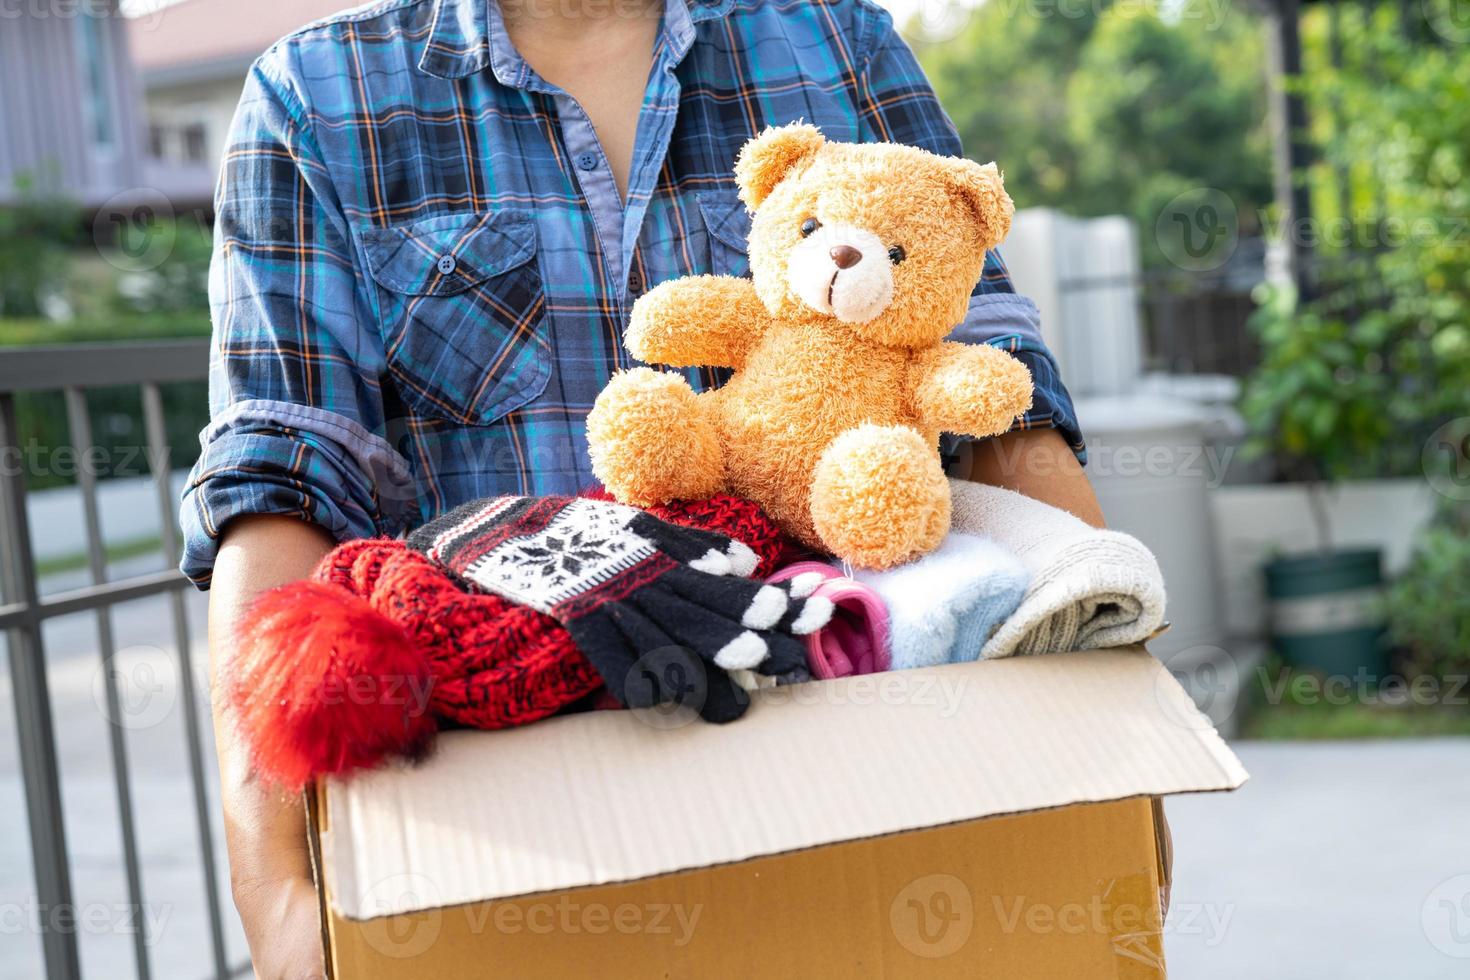 tenendo in mano una scatola per la donazione di vestiti con vestiti usati e una bambola a casa per sostenere l'aiuto ai poveri nel mondo. foto